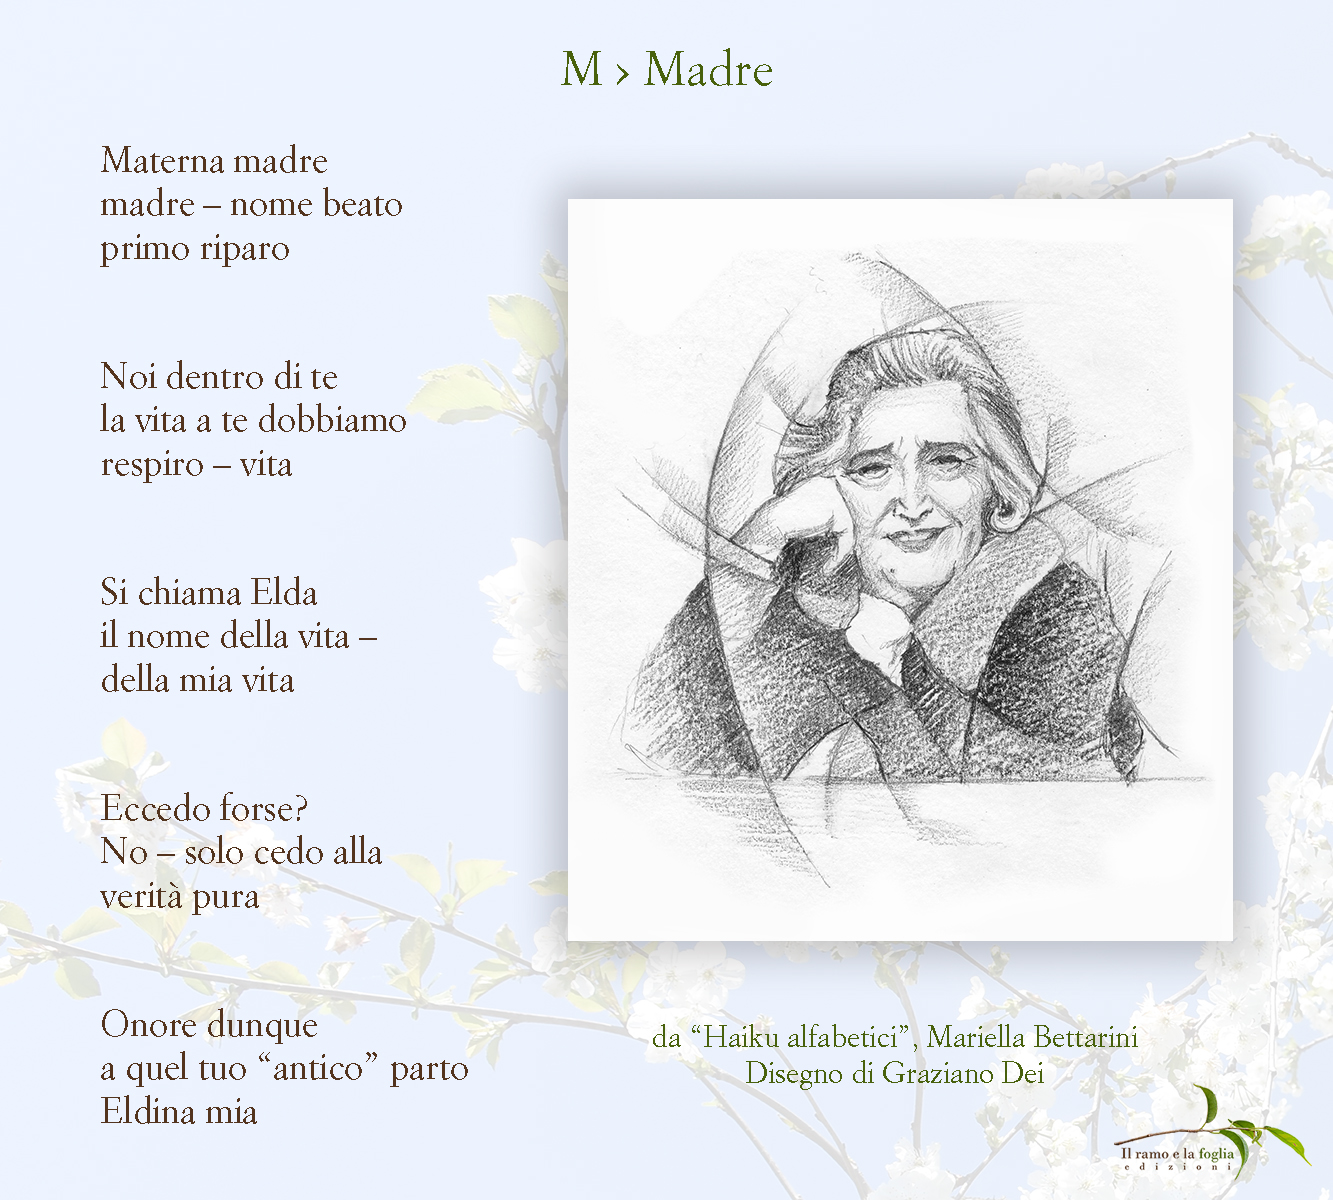 Cinque haiku e un disegno tratti da “Haiku alfabetici” di Mariella Bettarini